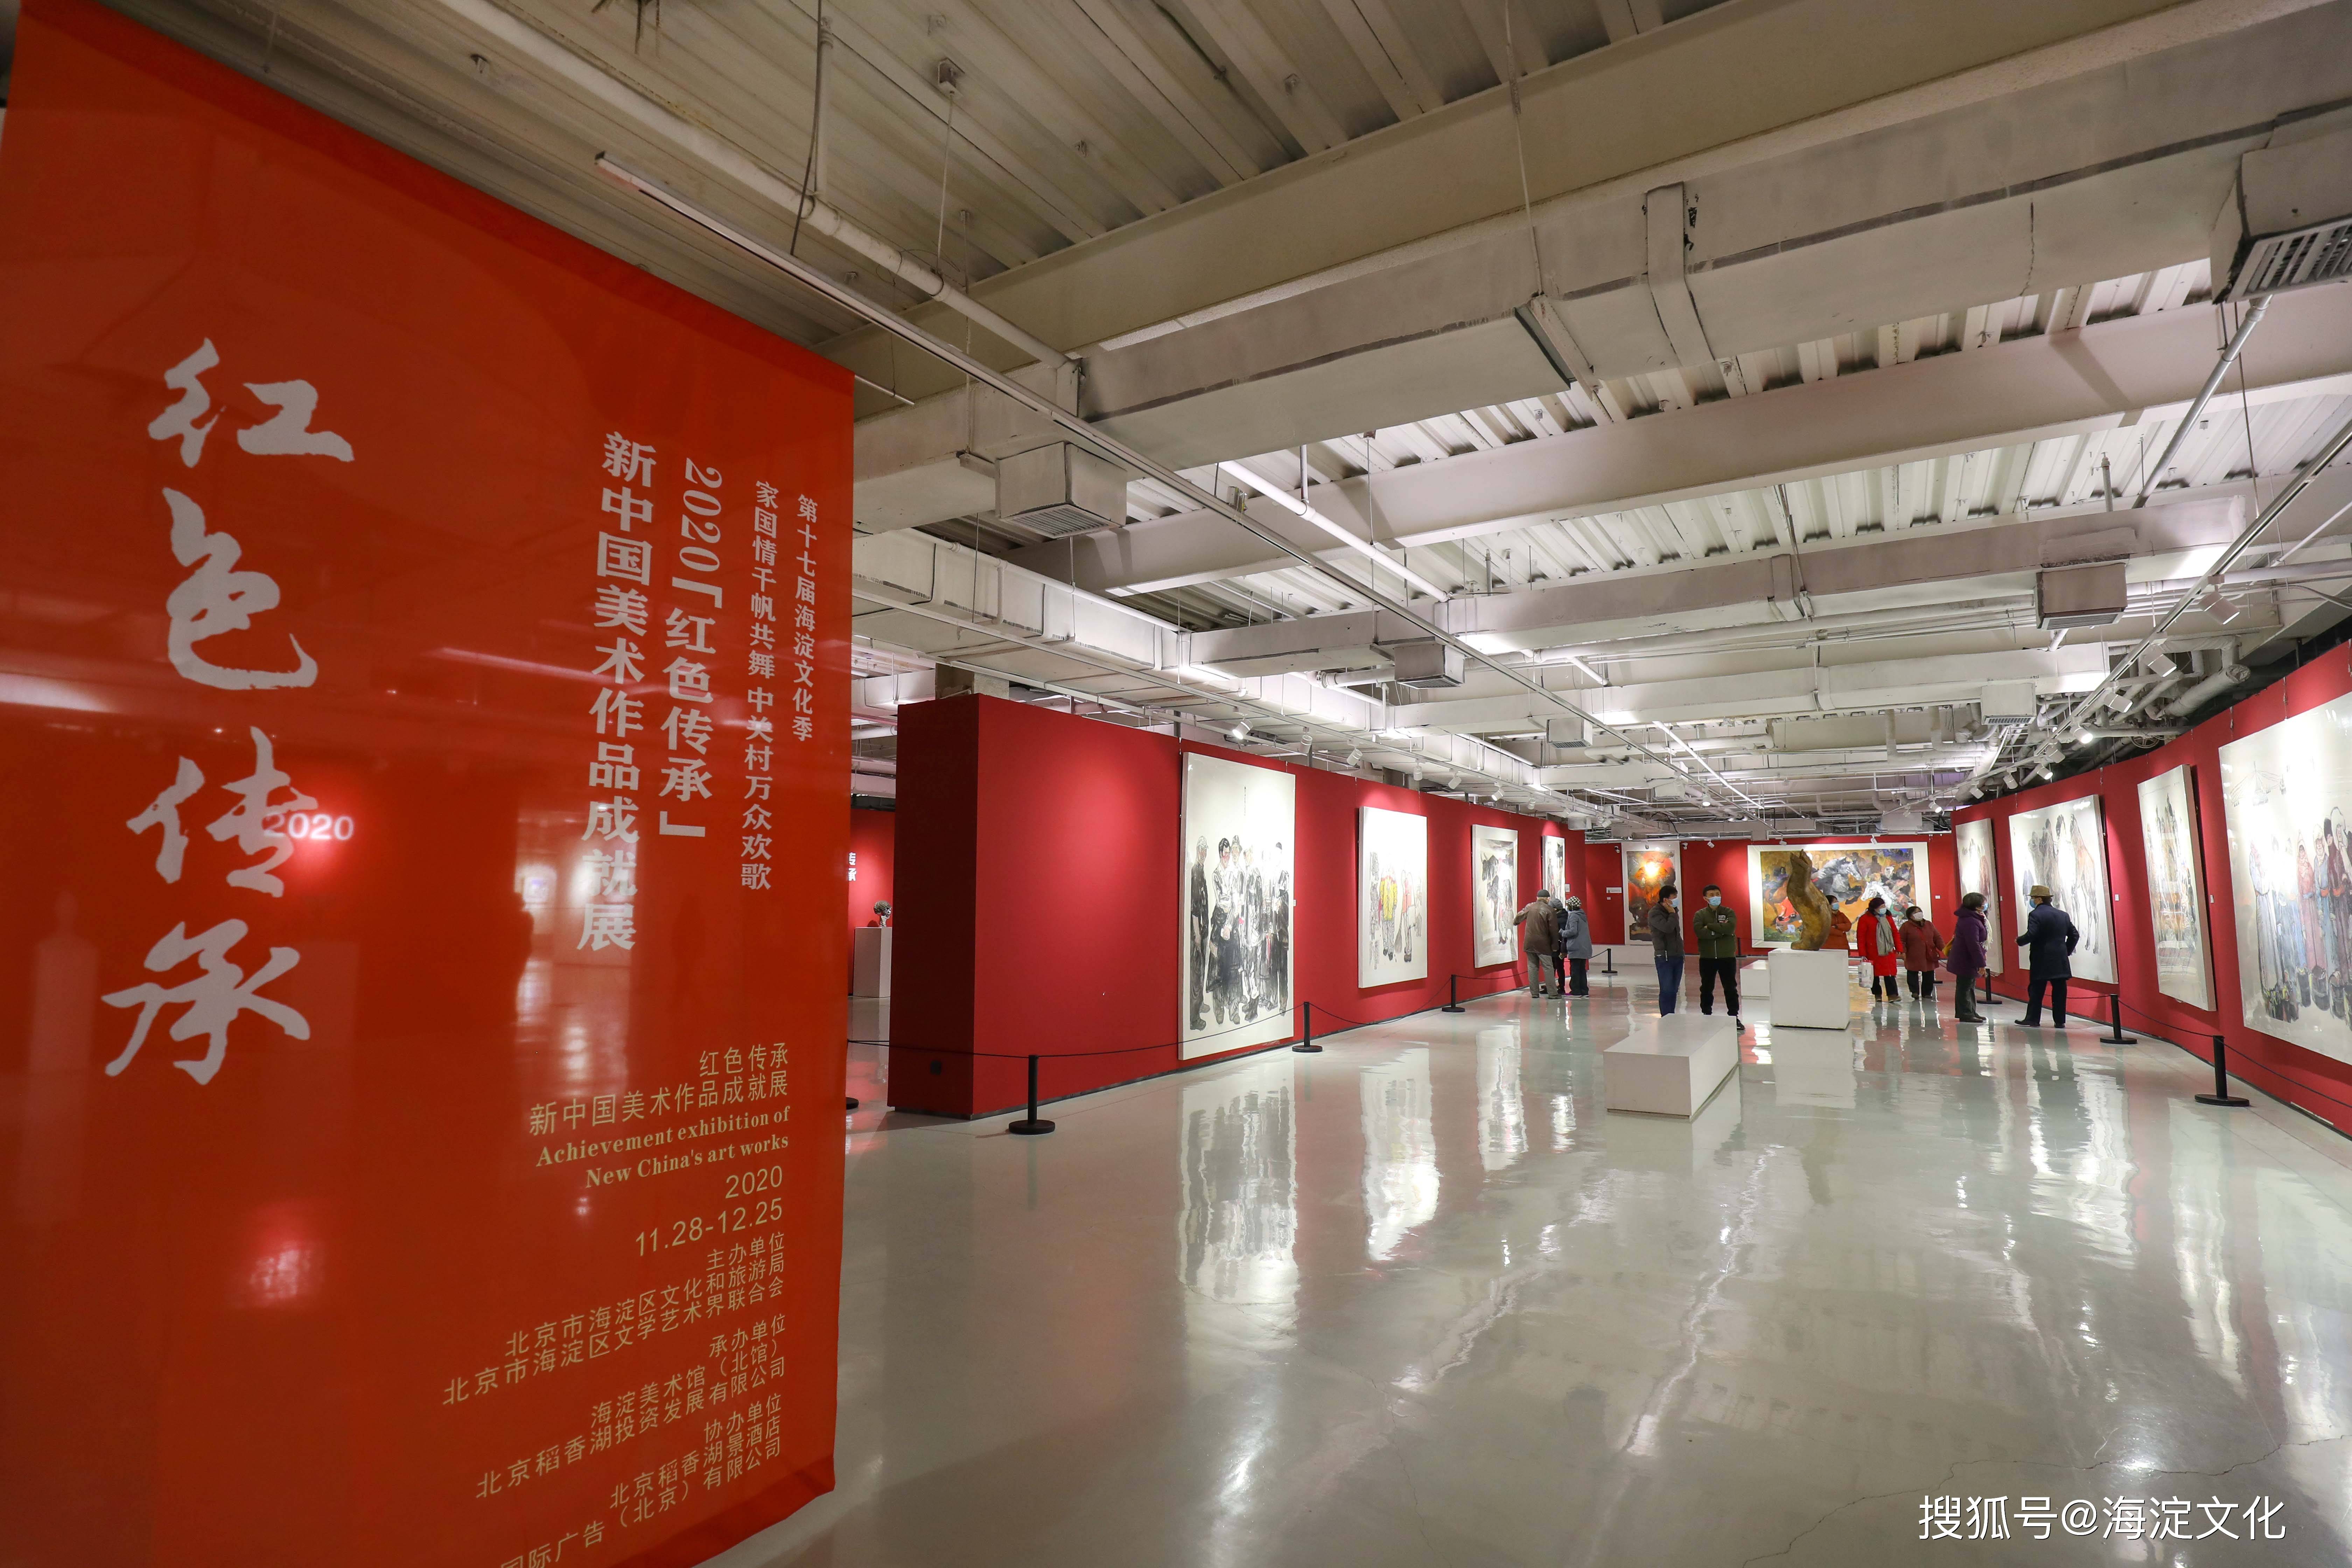 2020年红色传承-新中国美术作品成就展开幕